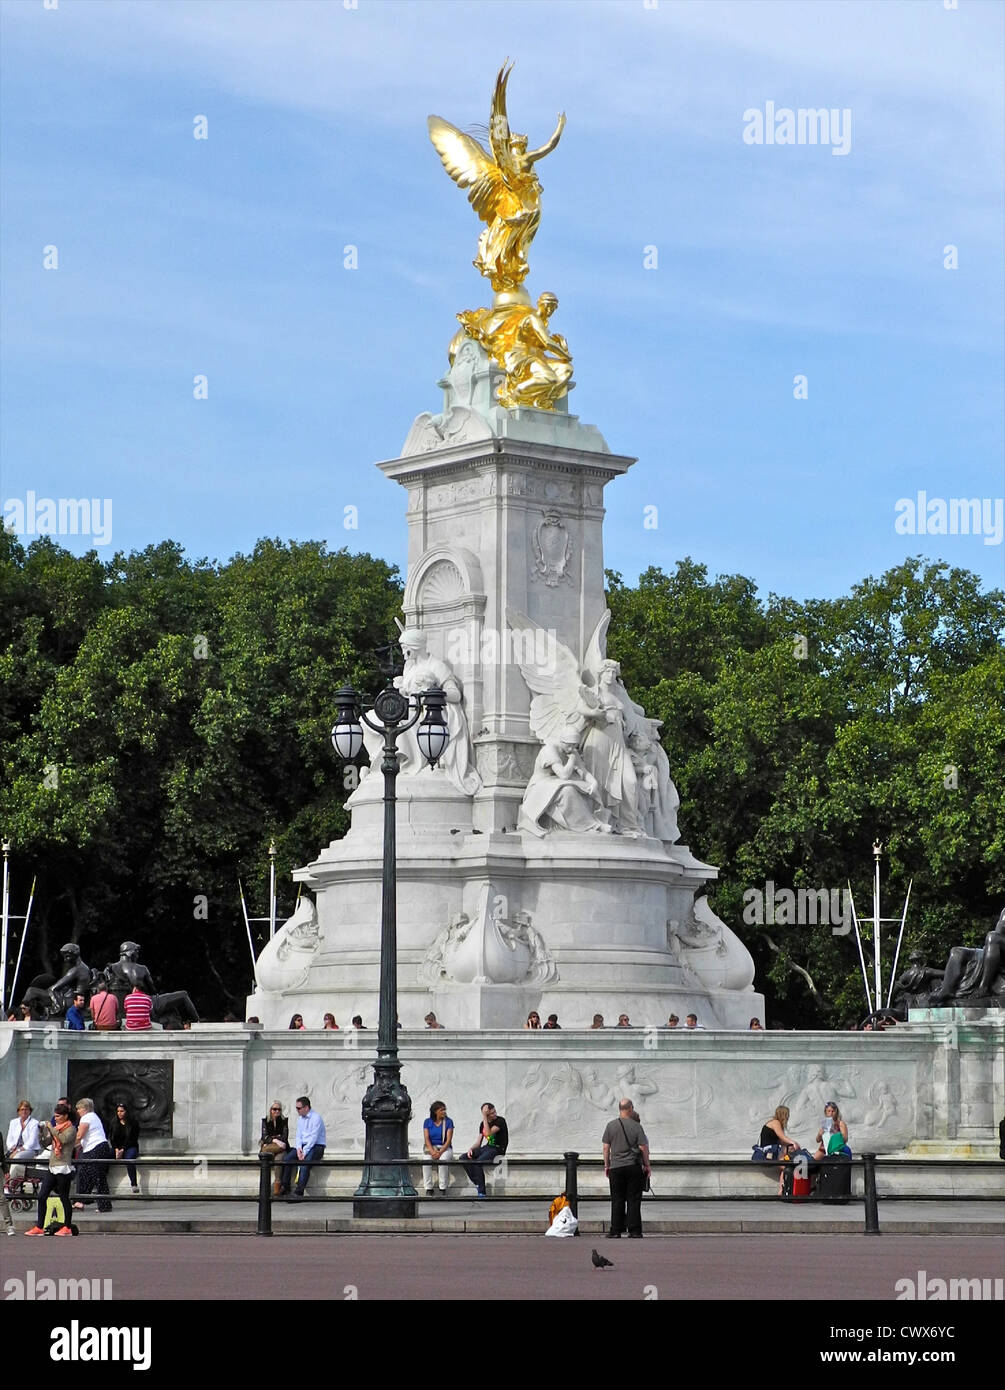 Memoriale della Victoria costruito nel 1913 in onore della regina Victoria si trova di fronte a Buckingham Palace alla fine del Mall London Foto Stock